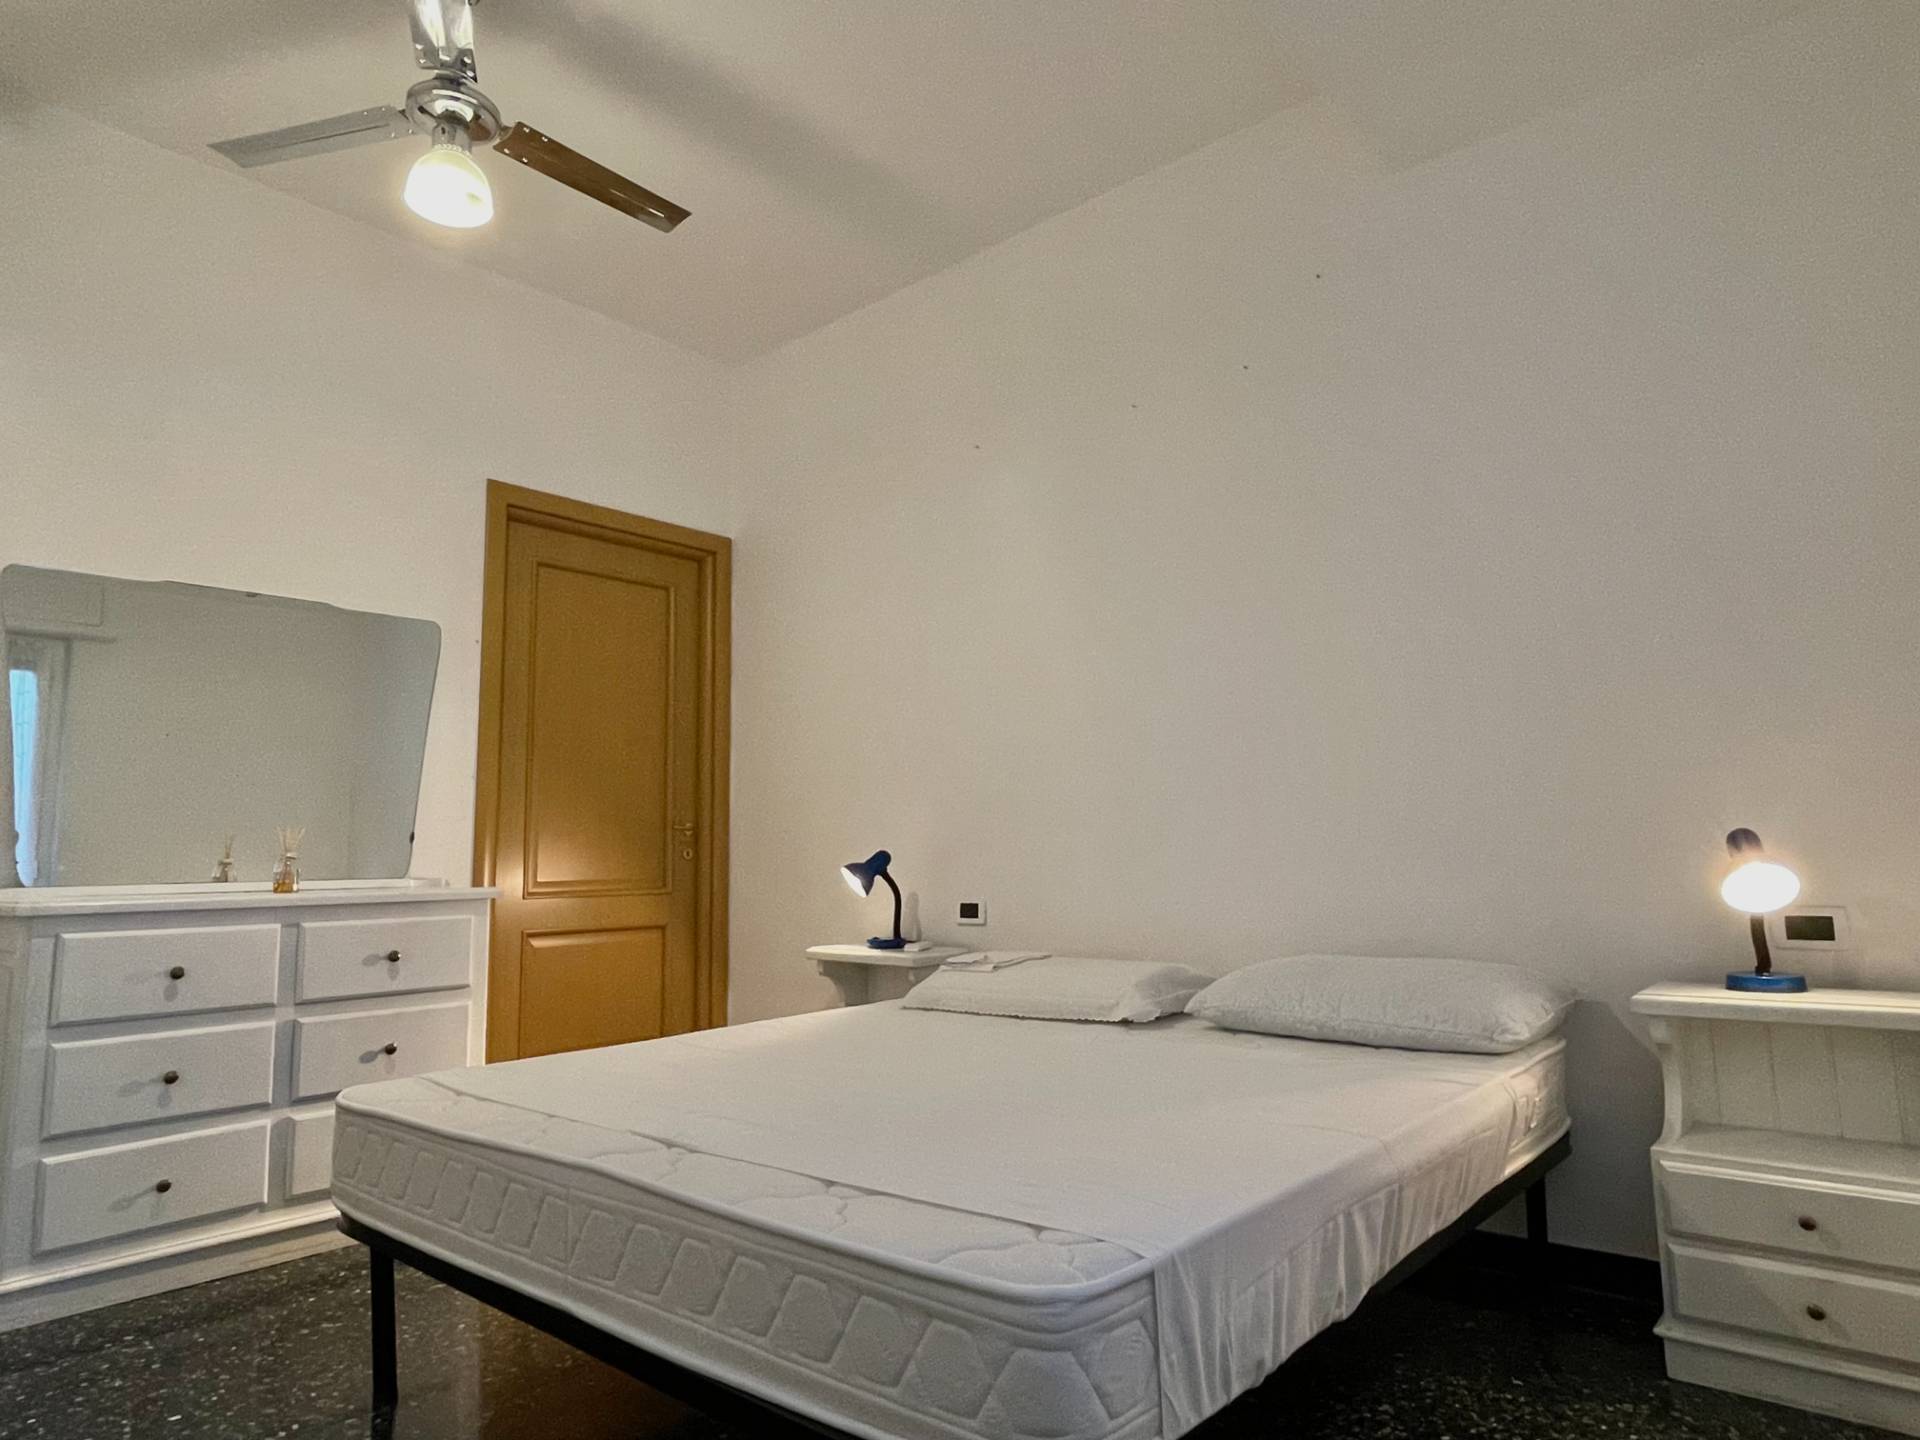 Appartamento in affitto a Albisola Superiore, 3 locali, zona Località: AlbisolaCapo, prezzo € 500 | PortaleAgenzieImmobiliari.it